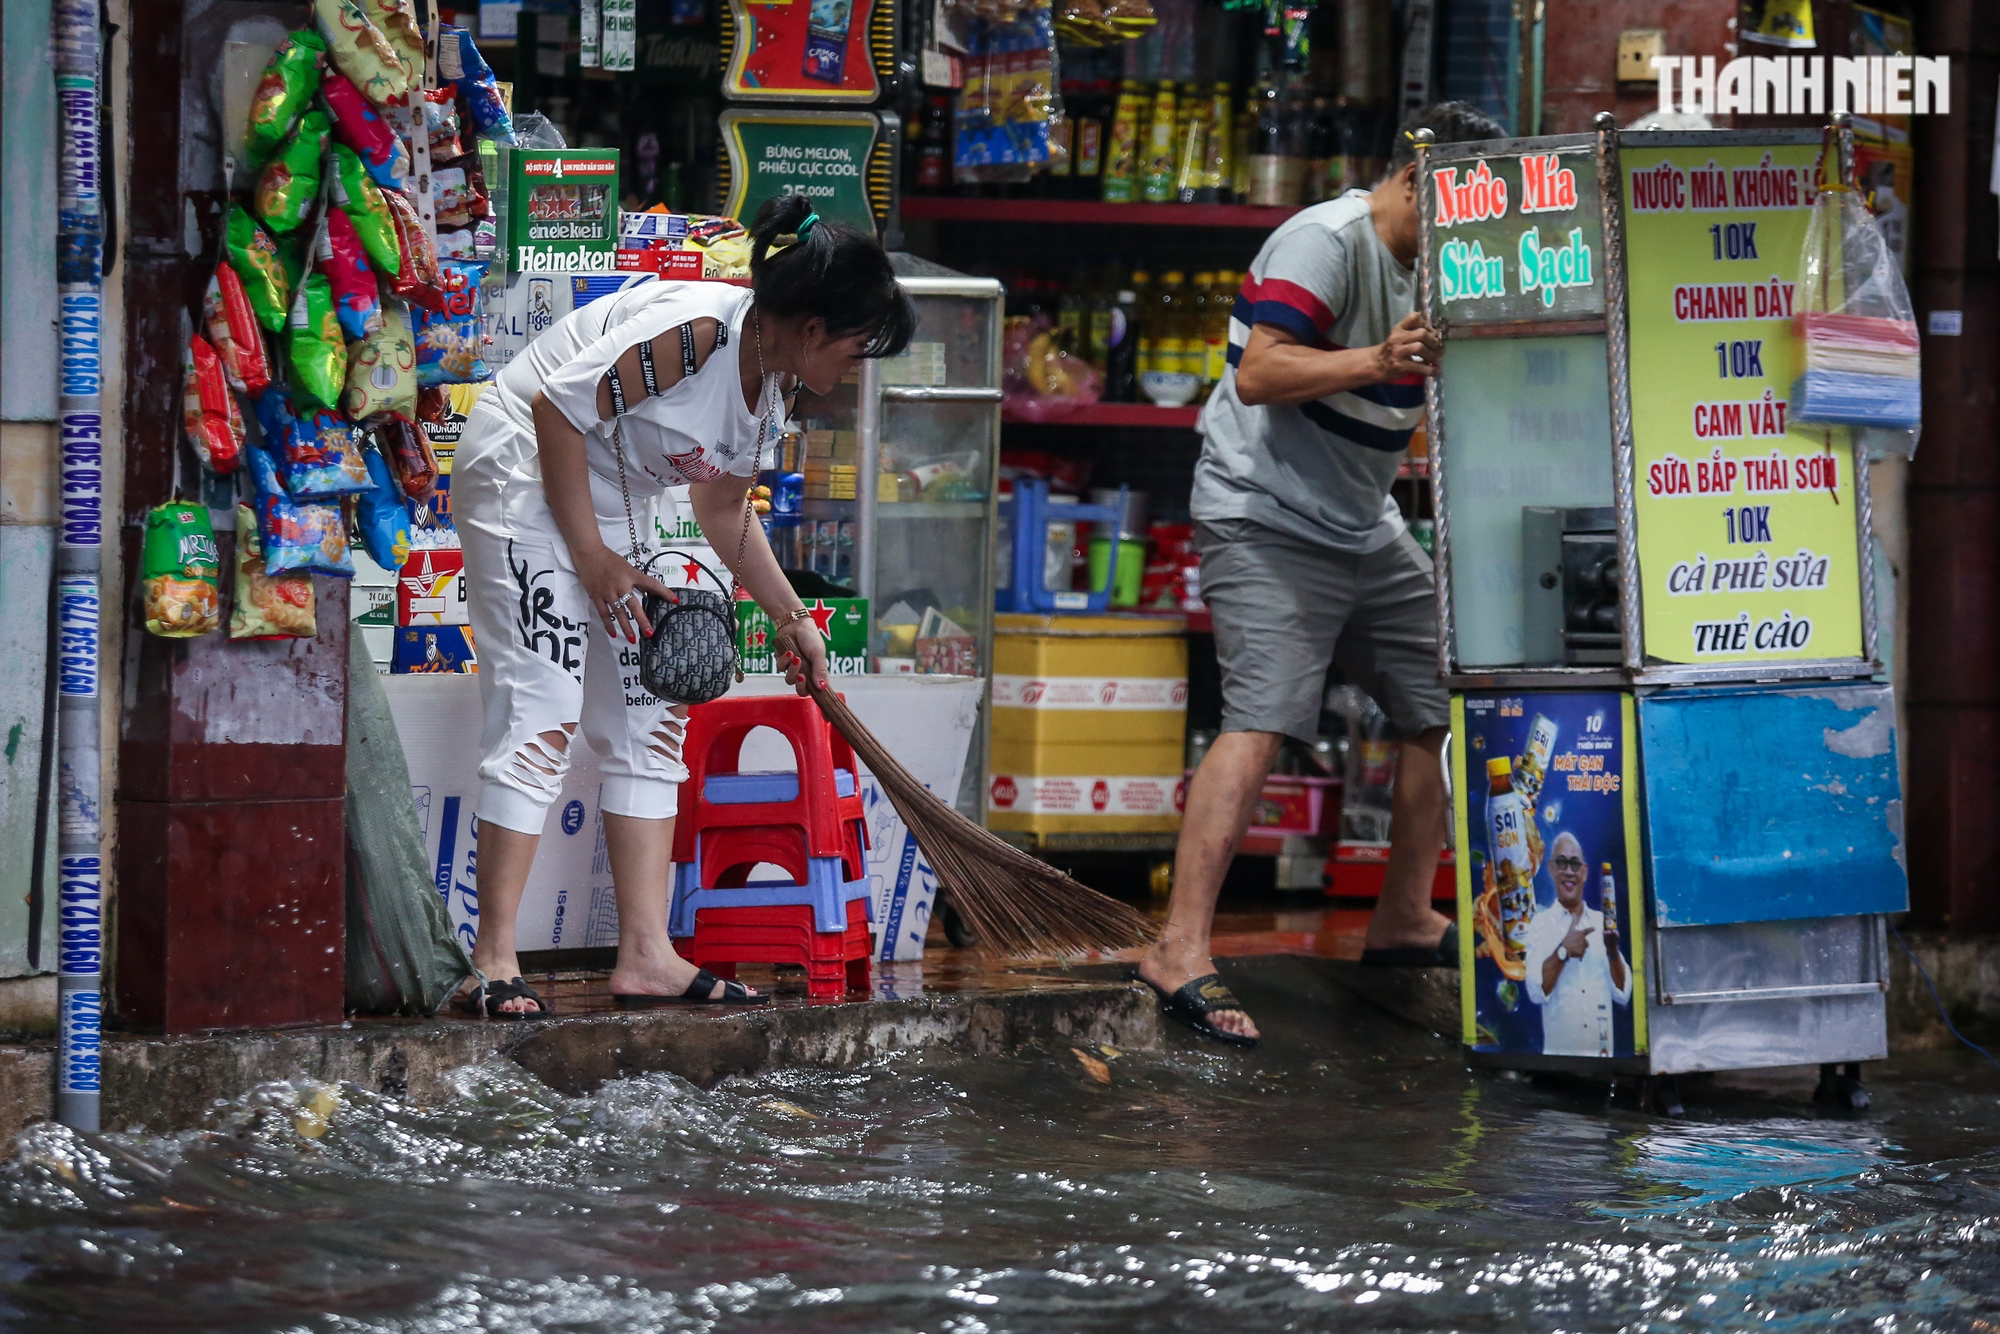 Đường TP.HCM ngập lênh láng sau mưa, người dân vất vả lội nước về nhà - Ảnh 9.